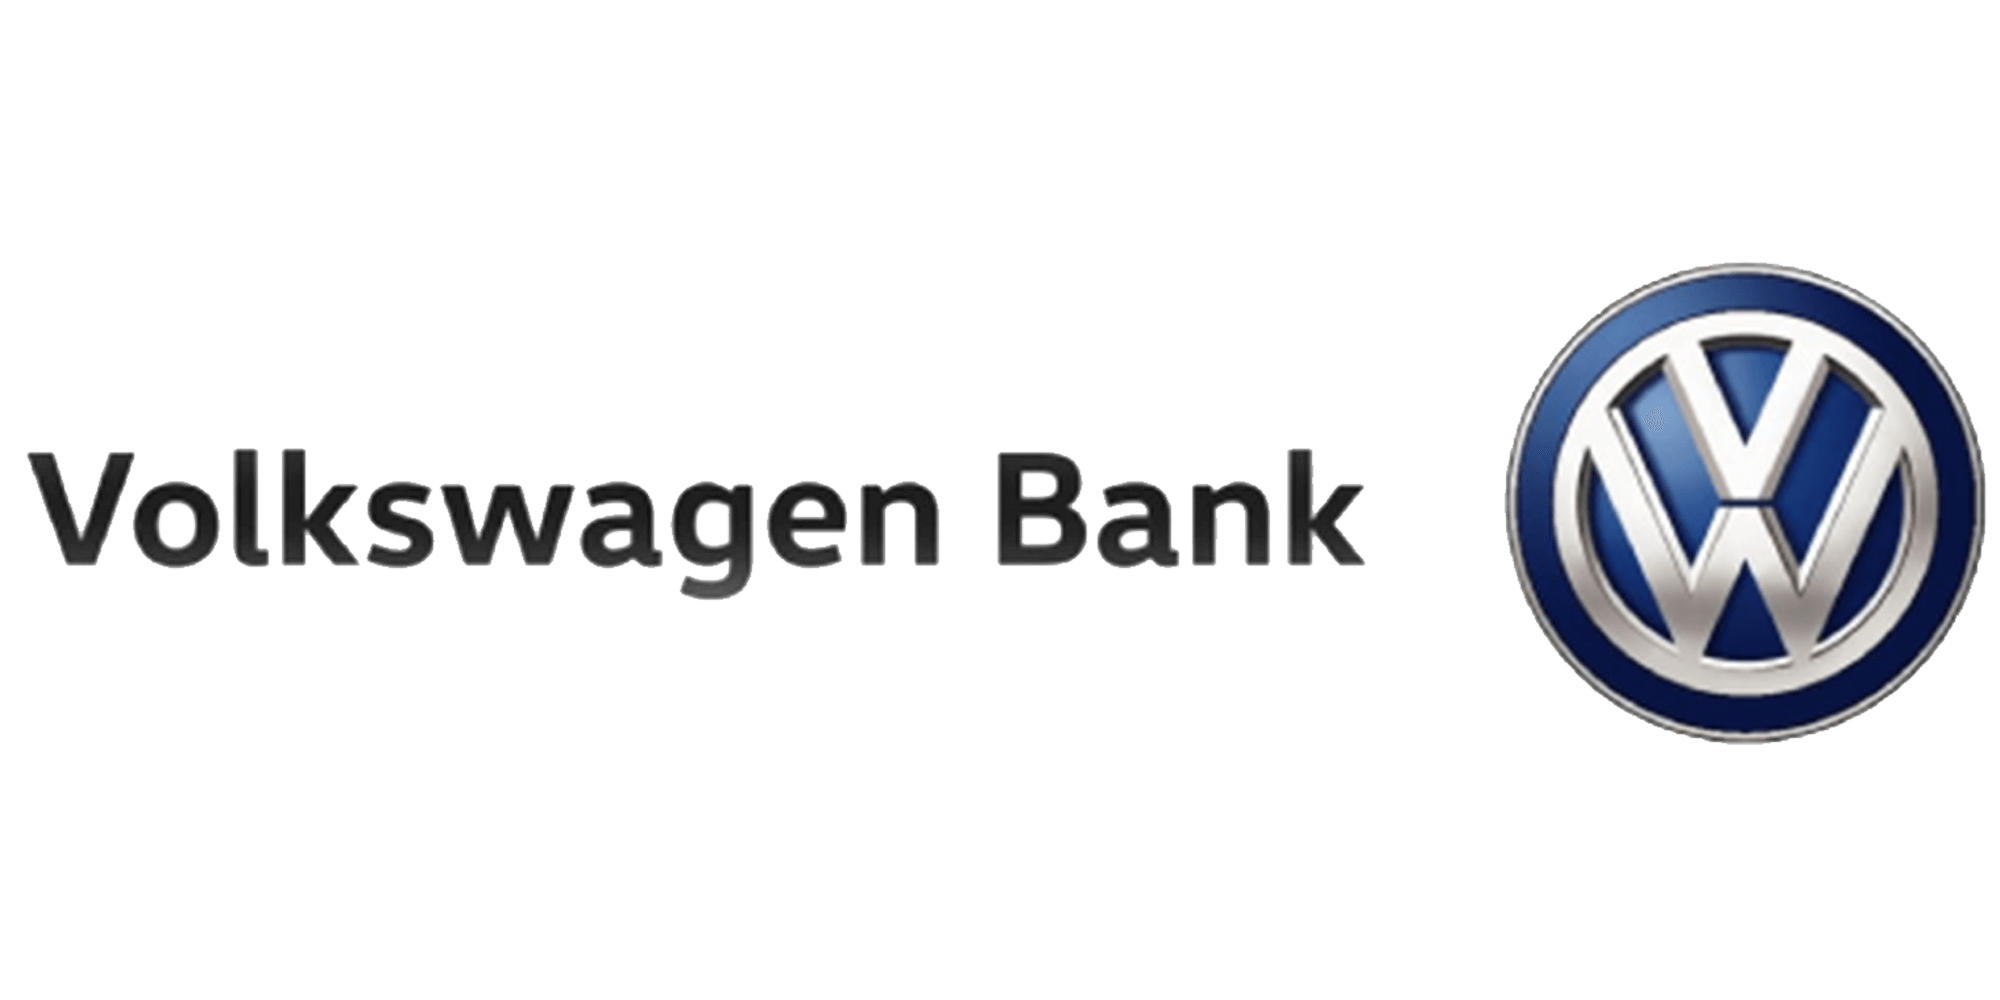  Volkswagen Bank